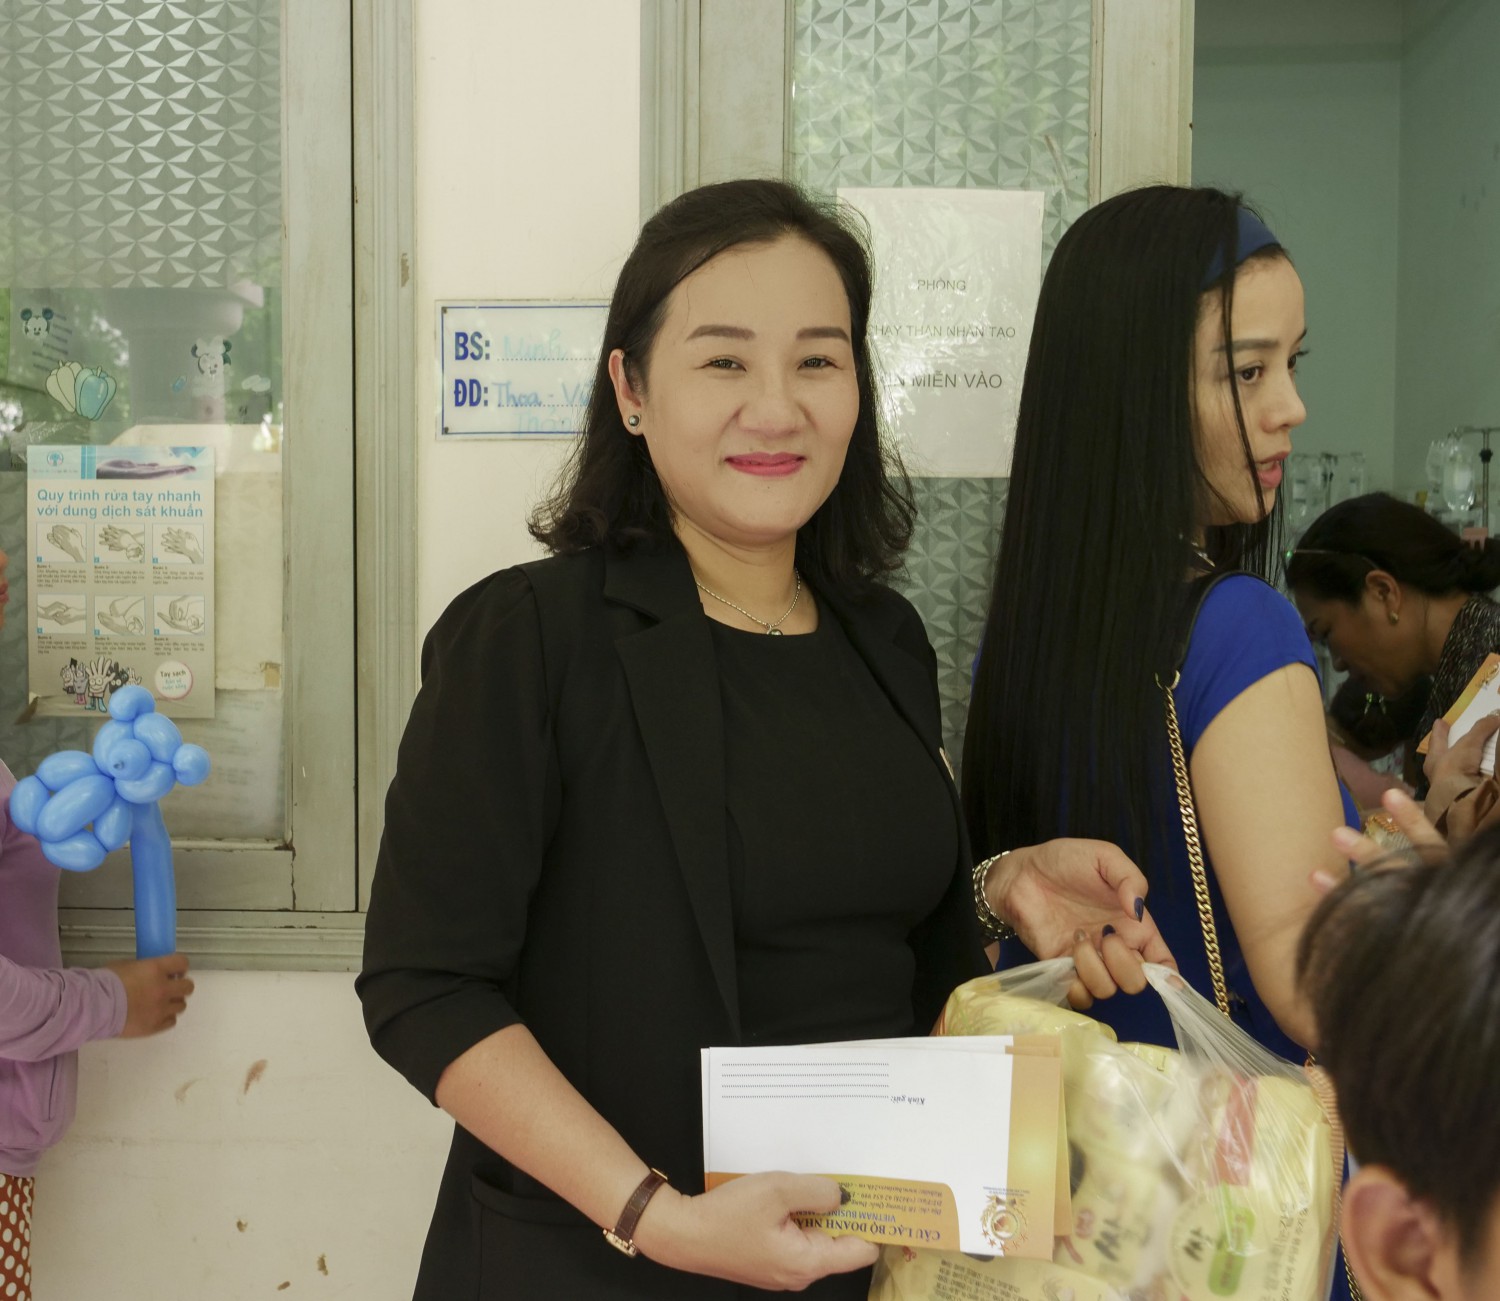 Doanh nhân Quách Thị Loan cũng có mặt rất sớm để tham gia trao quà cùng CLB